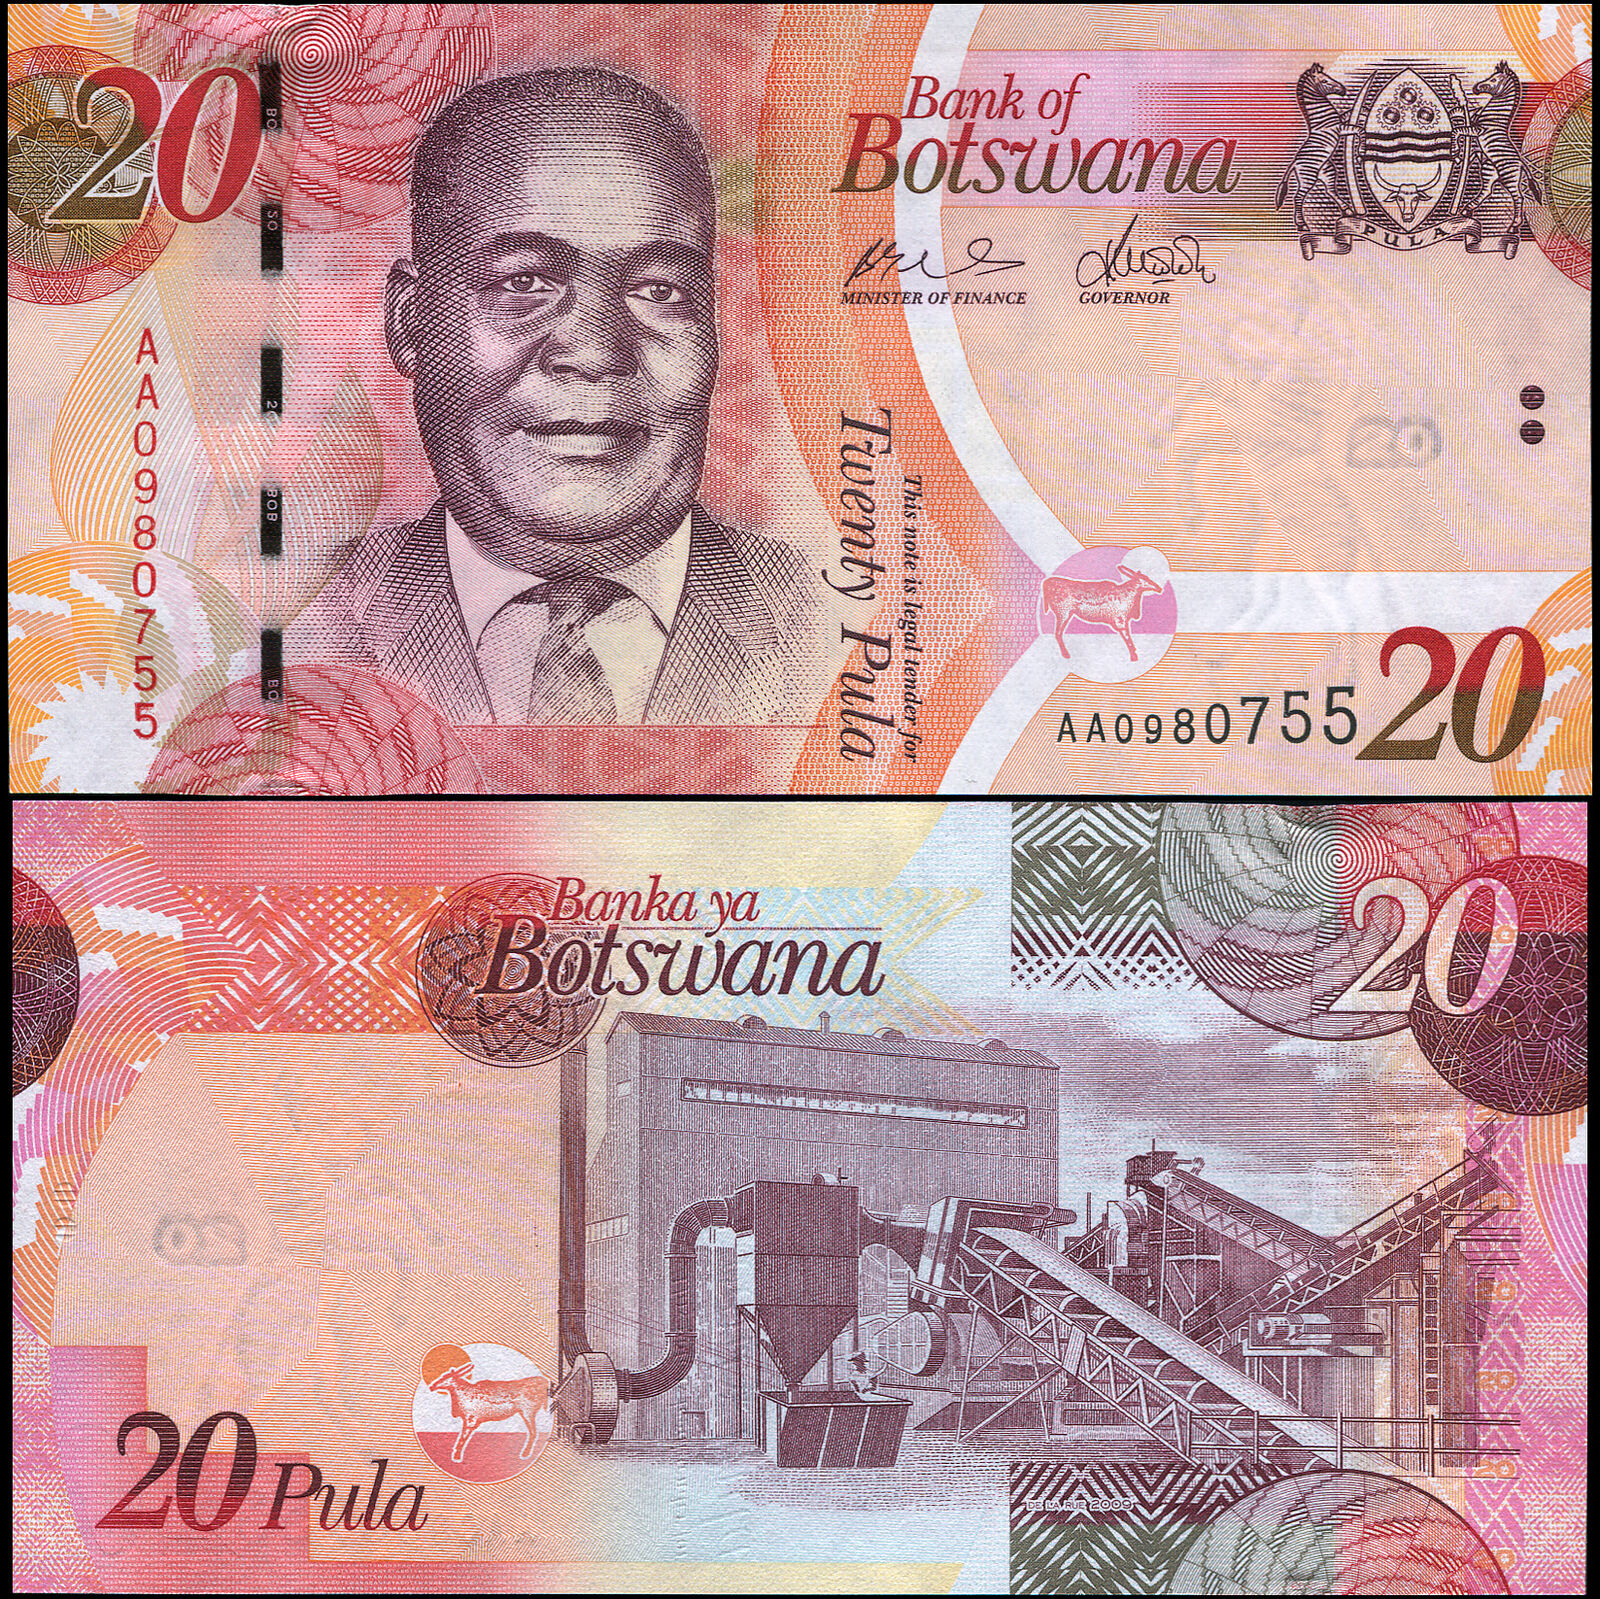 Botswana Banknote 20 Pula - P.31a 2009 Unc